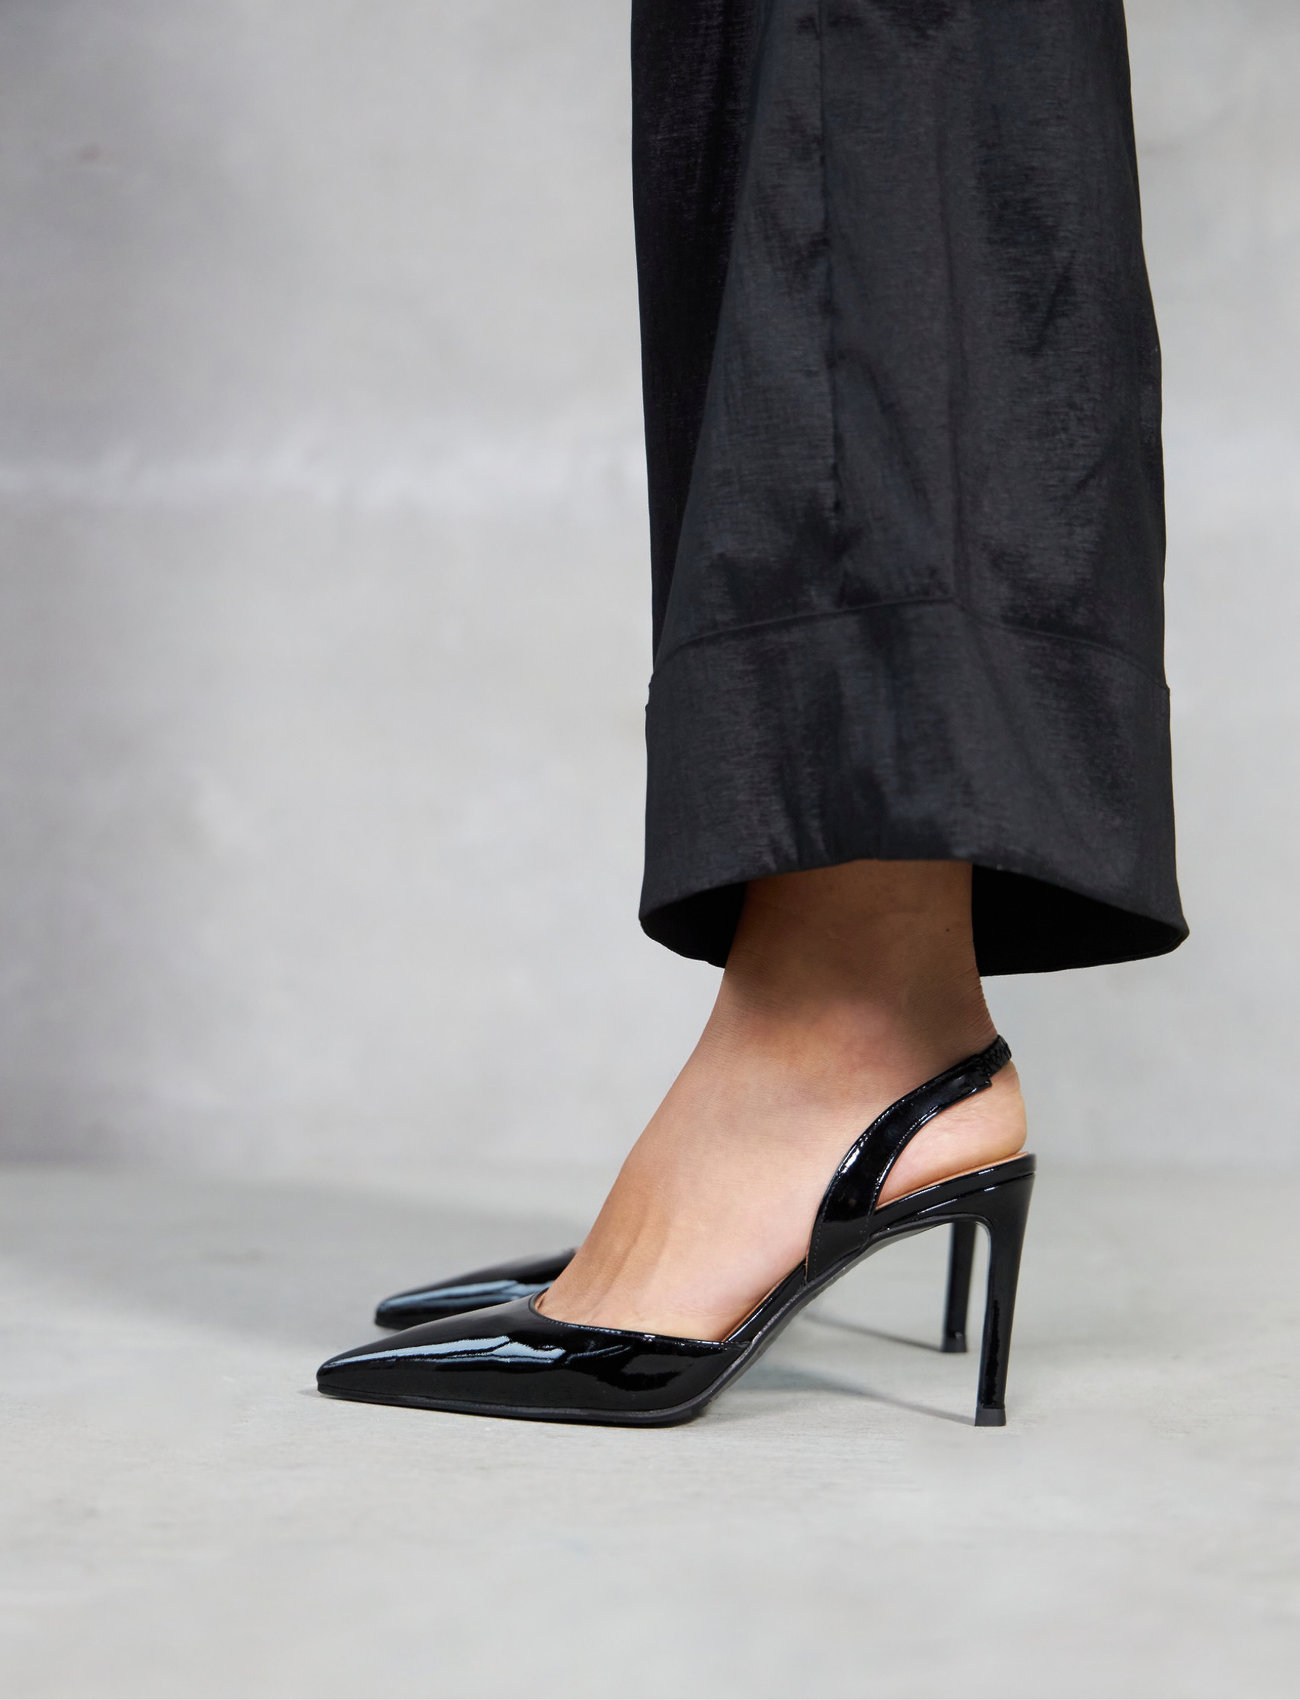 Billi Bi - Pumps - heeled slingbacks - black patent - 0